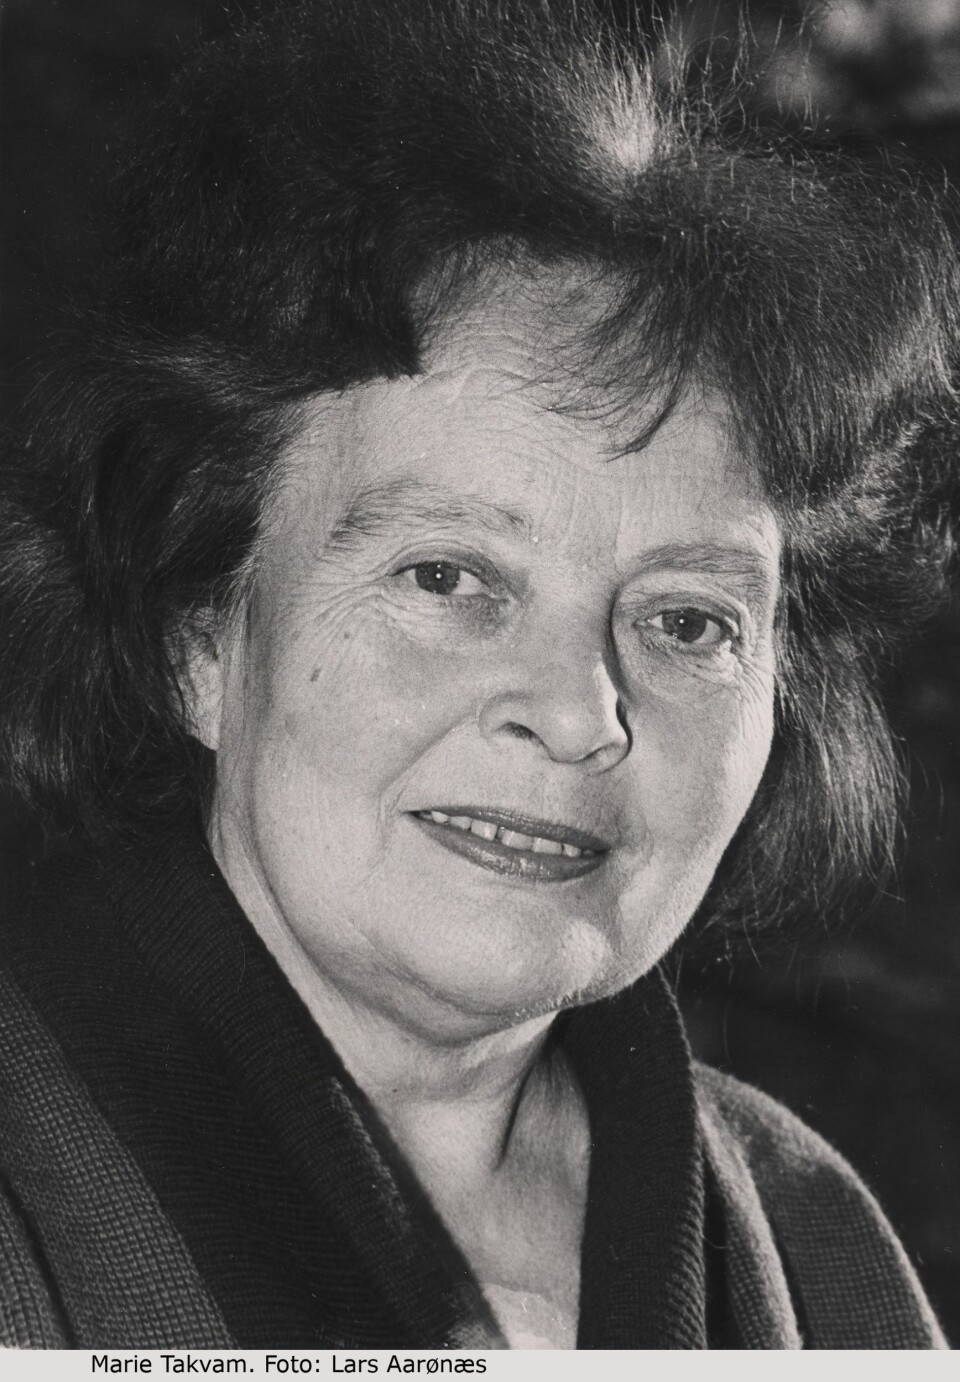 Marie Takvam fikk mer omtale av sitt utseende enn av sine dikt. (Foto: Lars Aarønæs, Gyldendal Norsk Forlag).